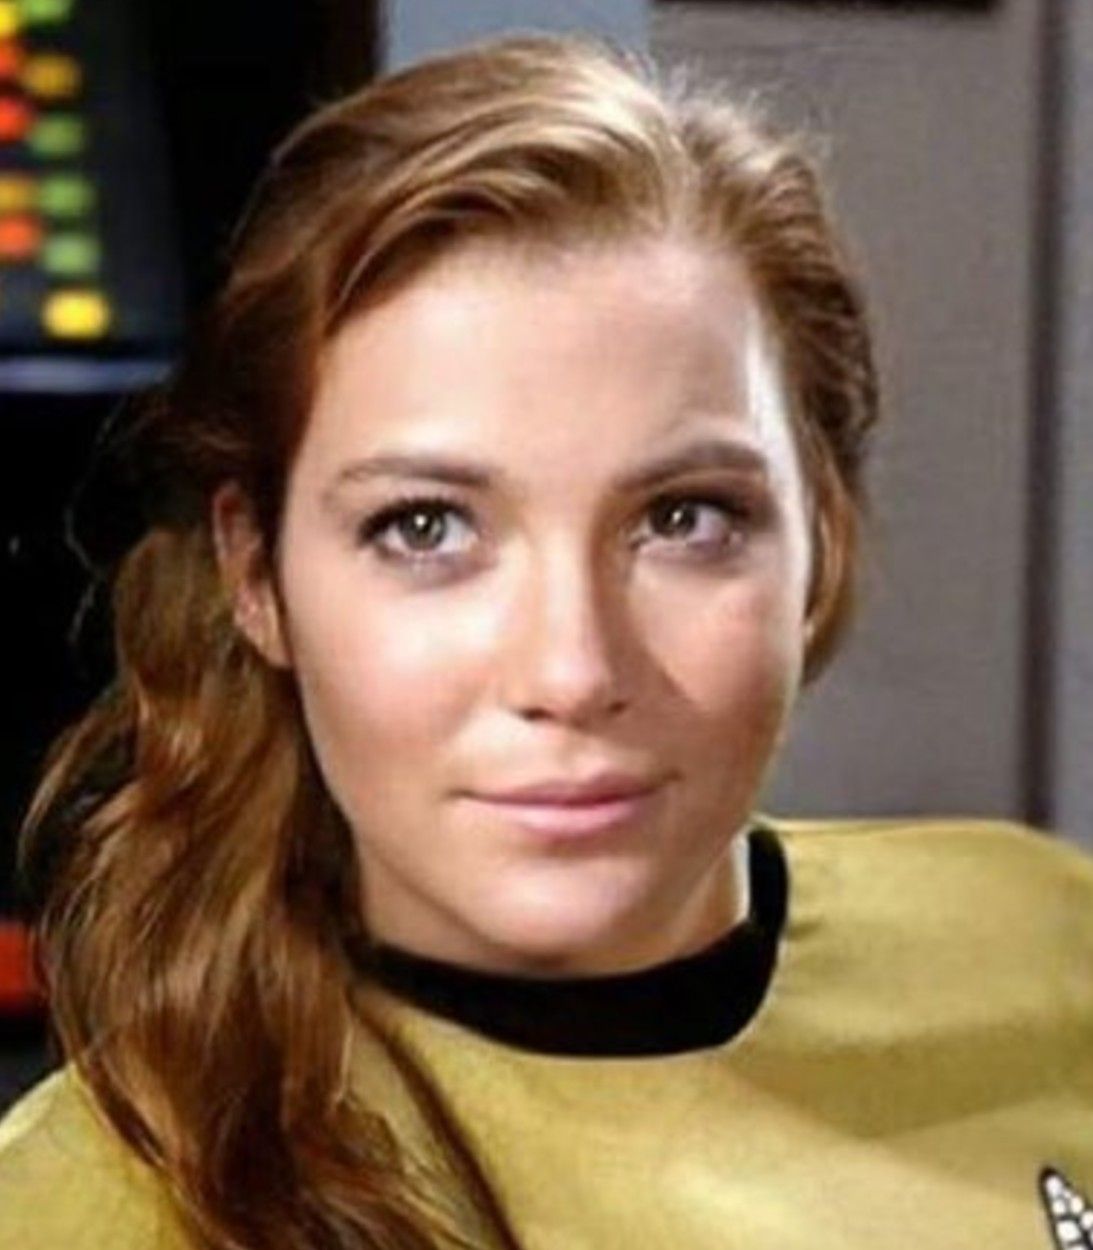 Female Captain Kirk from Star Trek: TOS